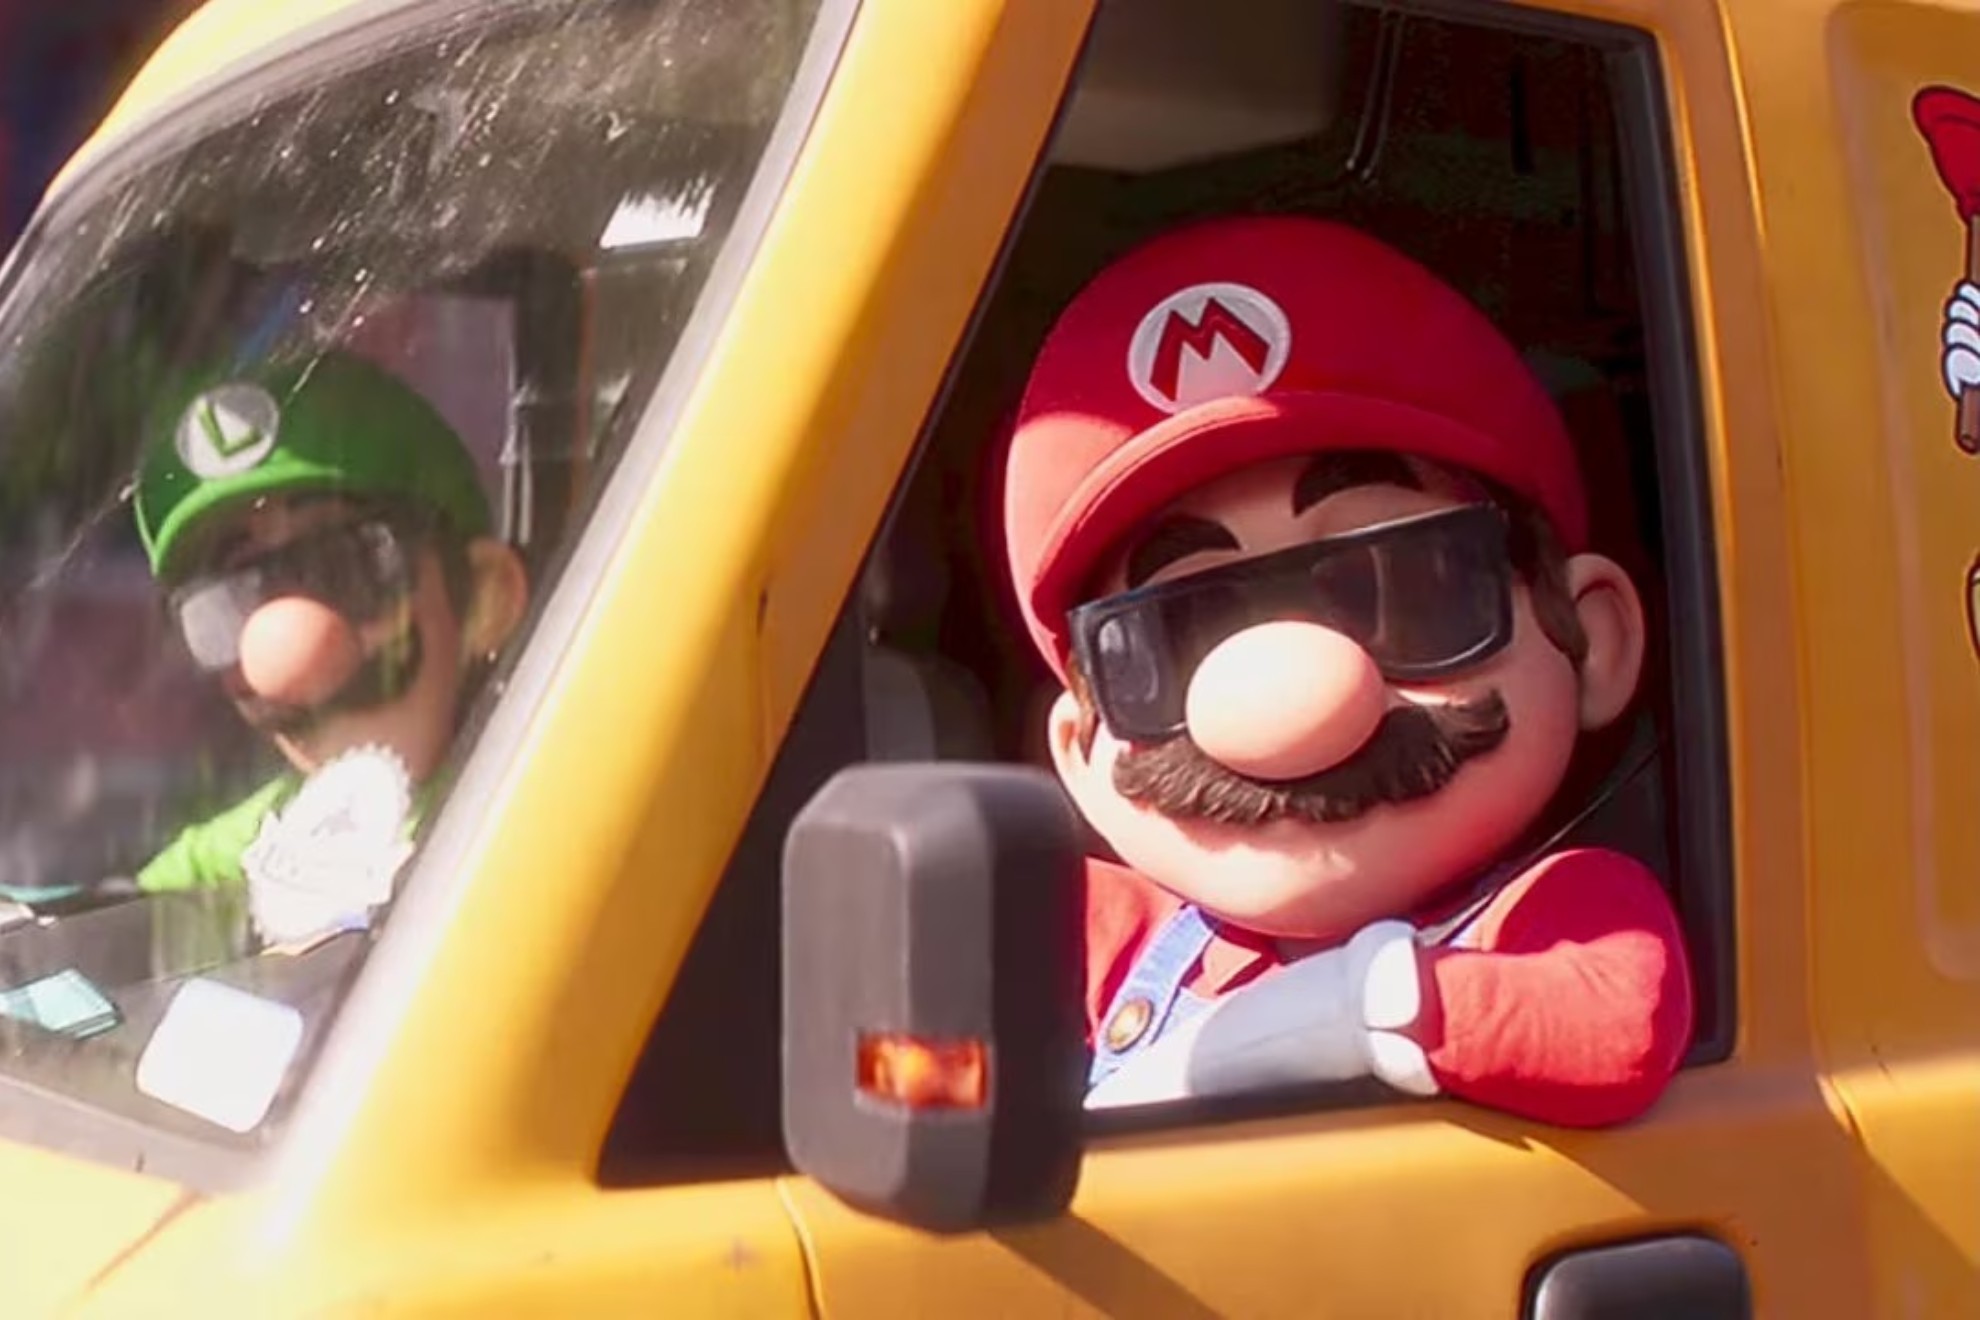 Cuándo se estrena Super Mario Bros: La Película' en servicios de